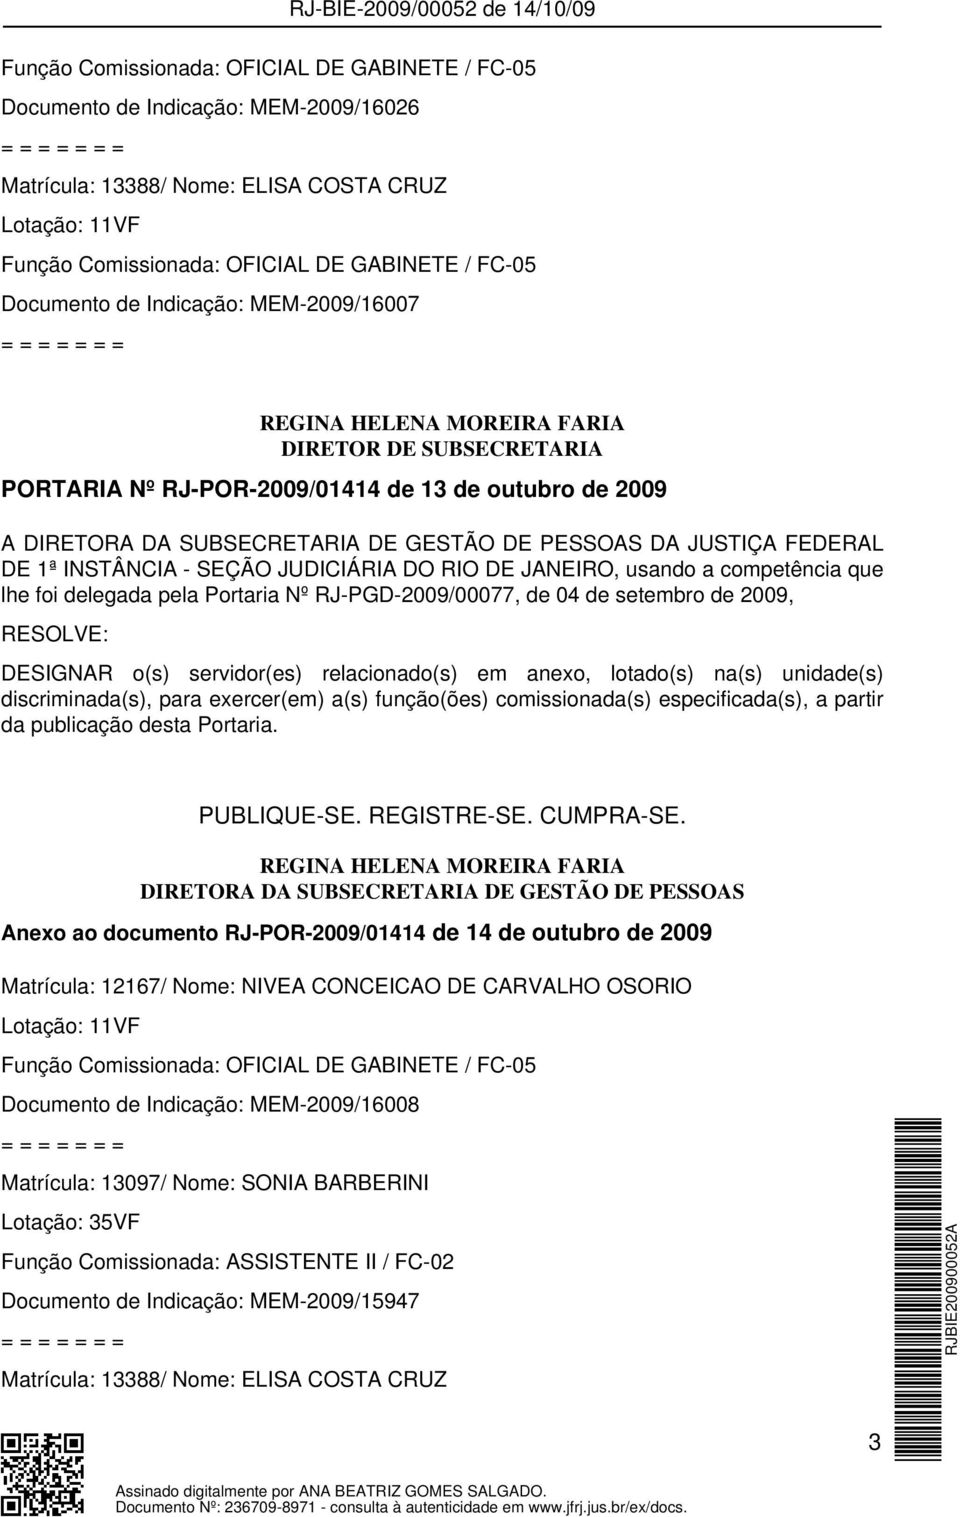 JUSTIÇA FEDERAL DE 1ª INSTÂNCIA - SEÇÃO JUDICIÁRIA DO RIO DE JANEIRO, usando a competência que lhe foi delegada pela Portaria Nº RJ-PGD-2009/00077, de 04 de setembro de 2009, RESOLVE: DESIGNAR o(s)